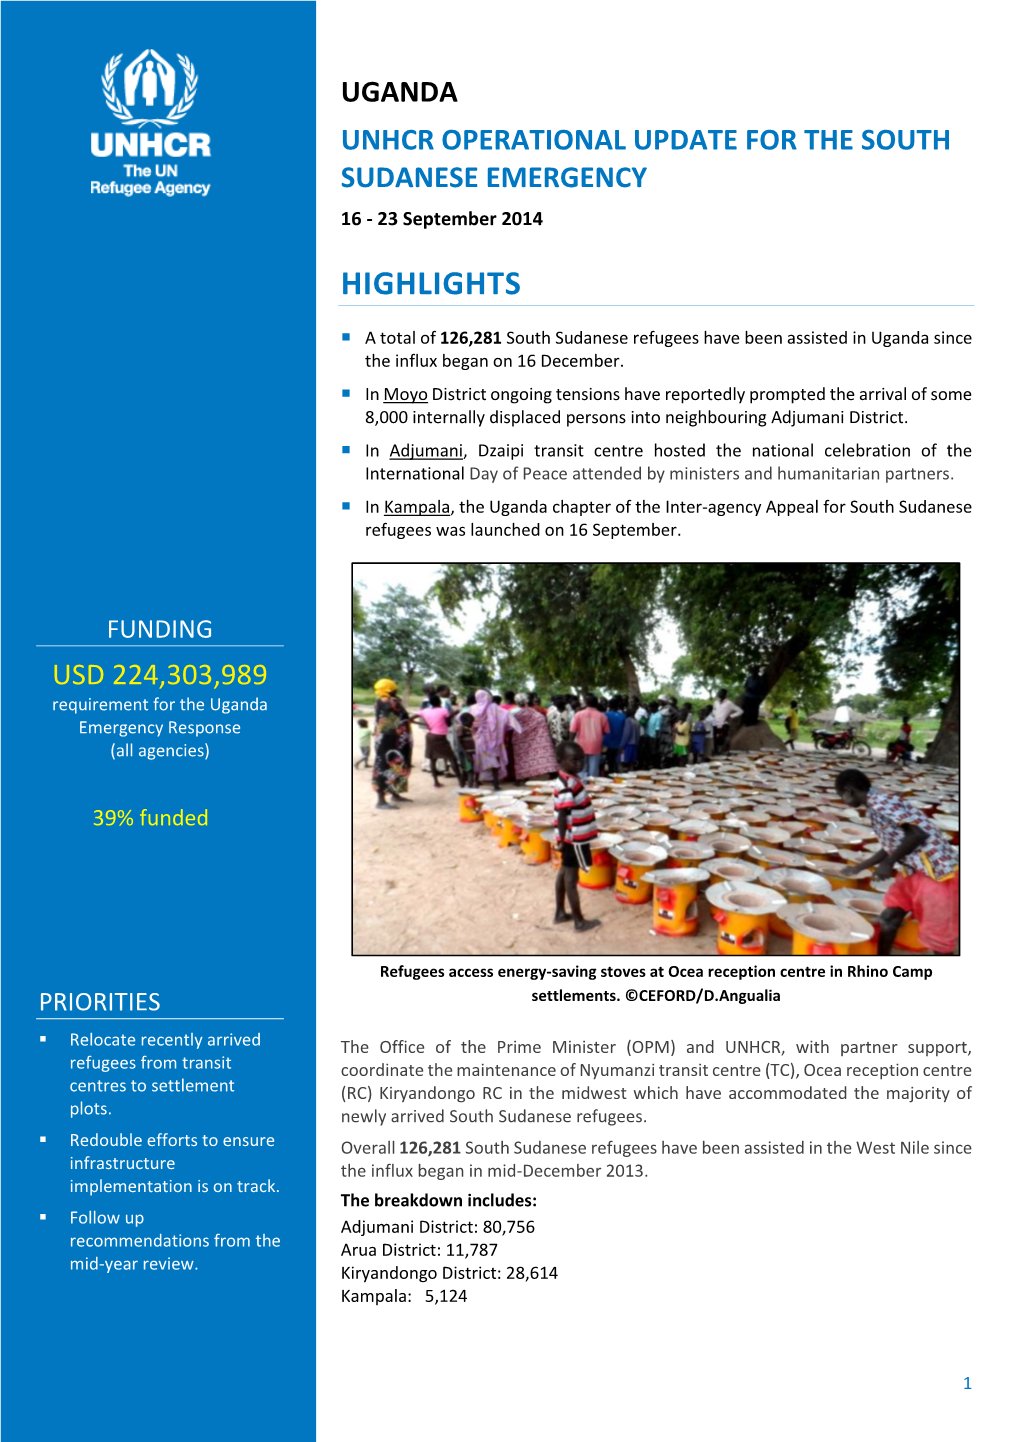 UGANDA UNHCR OPERATIONAL UPDATE for the SOUTH SUDANESE EMERGENCY 16 - 23 September 2014